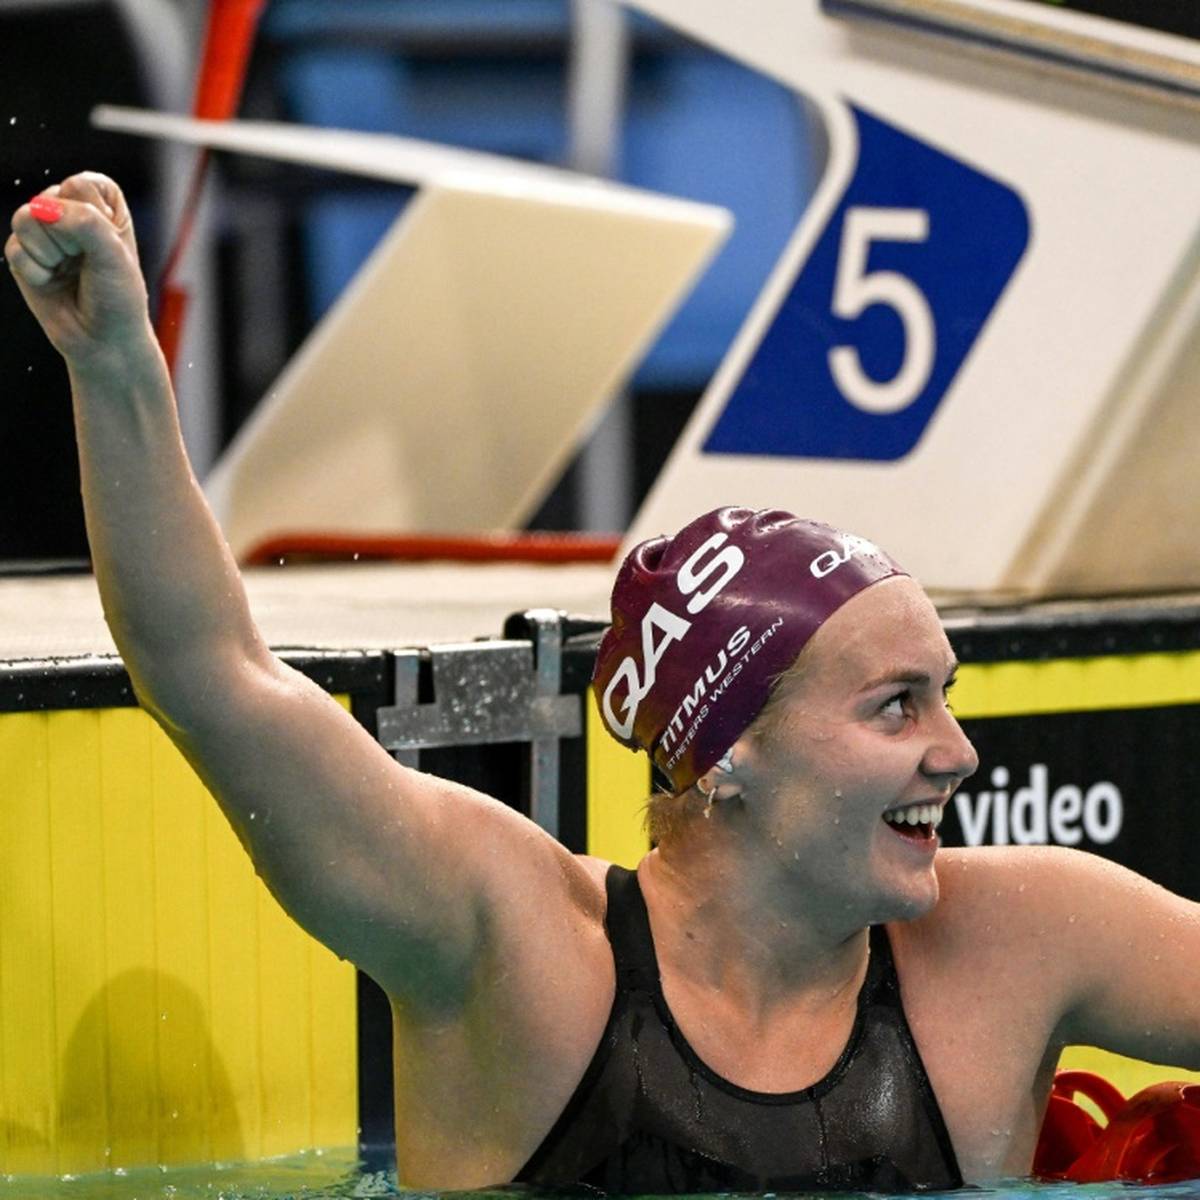 Doppel-Olympiasiegerin Ariarne Titmus hat bei den australischen Schwimm-Meisterschaften in Adelaide den Weltrekord über 400 m Freistil verbessert.